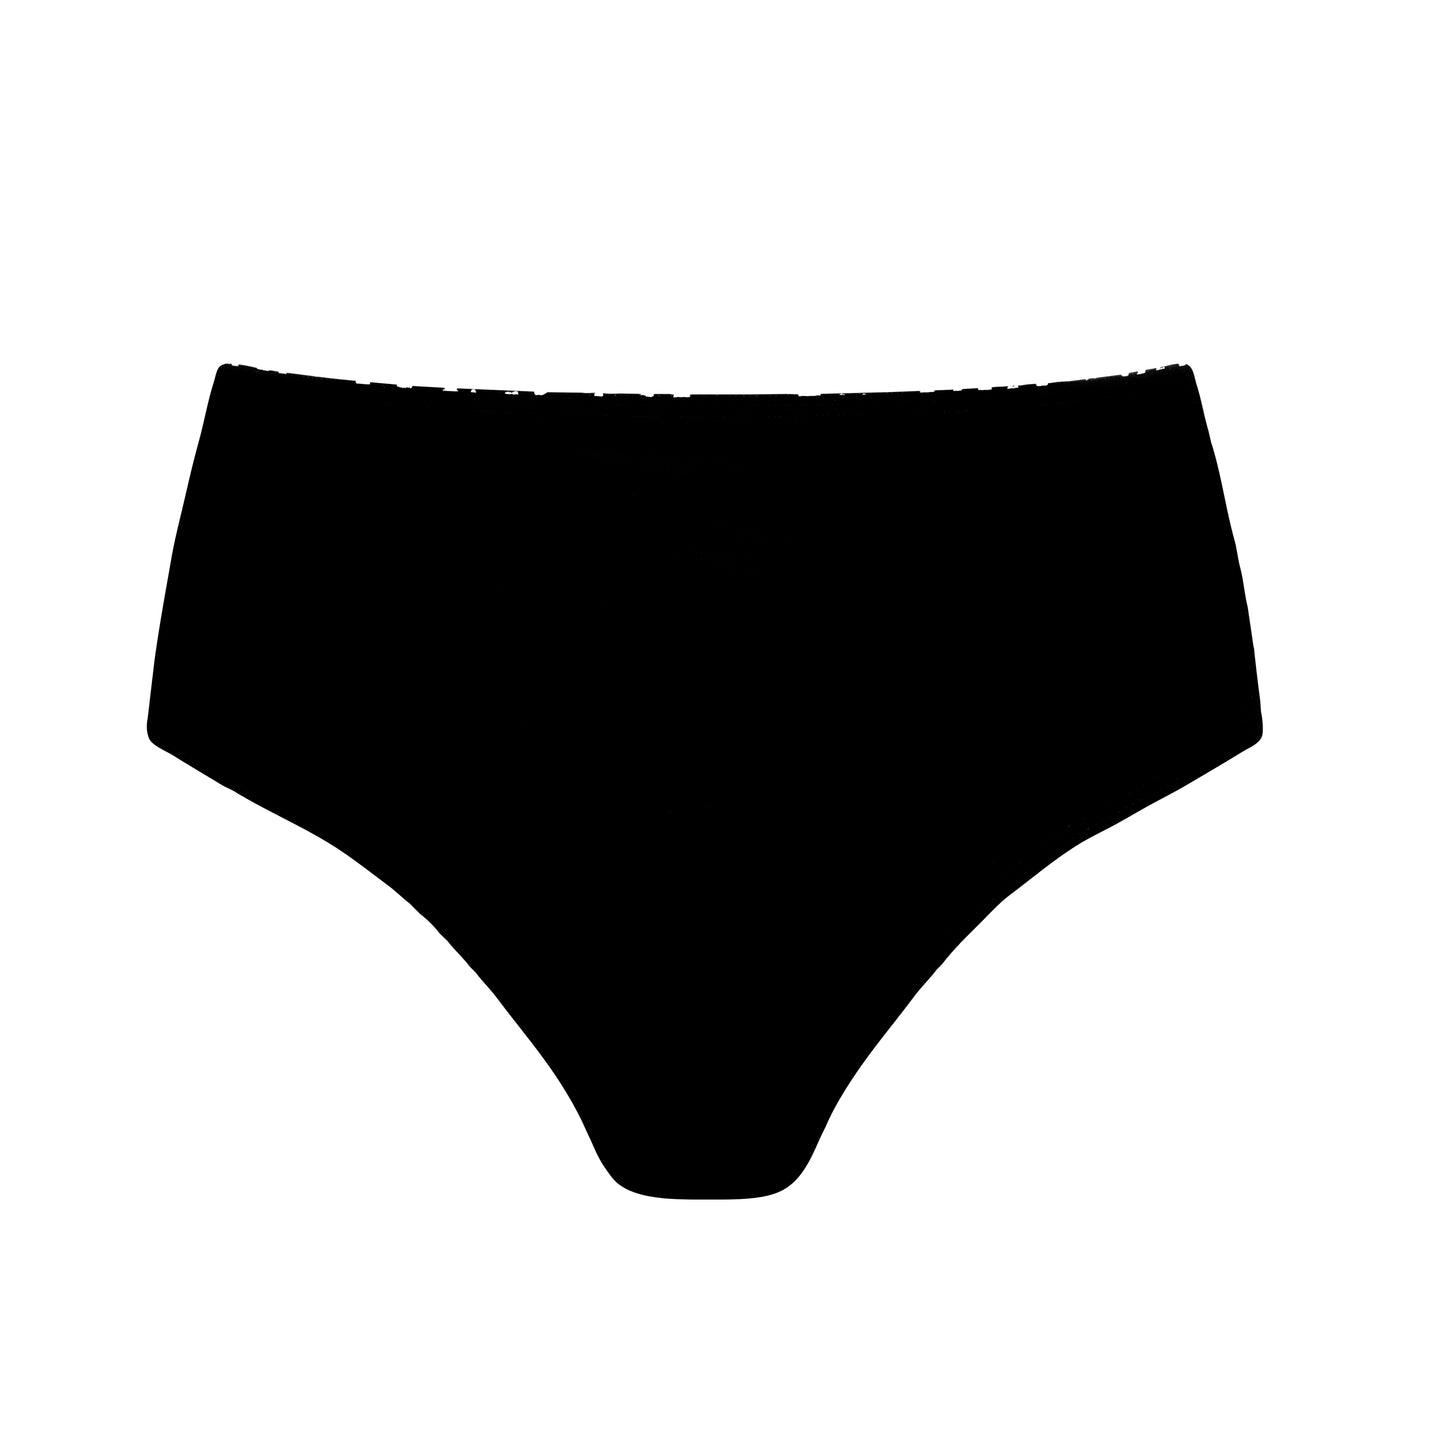 Mastectomy Manila High Waisted Swim Bottom Black/White - By Amoena